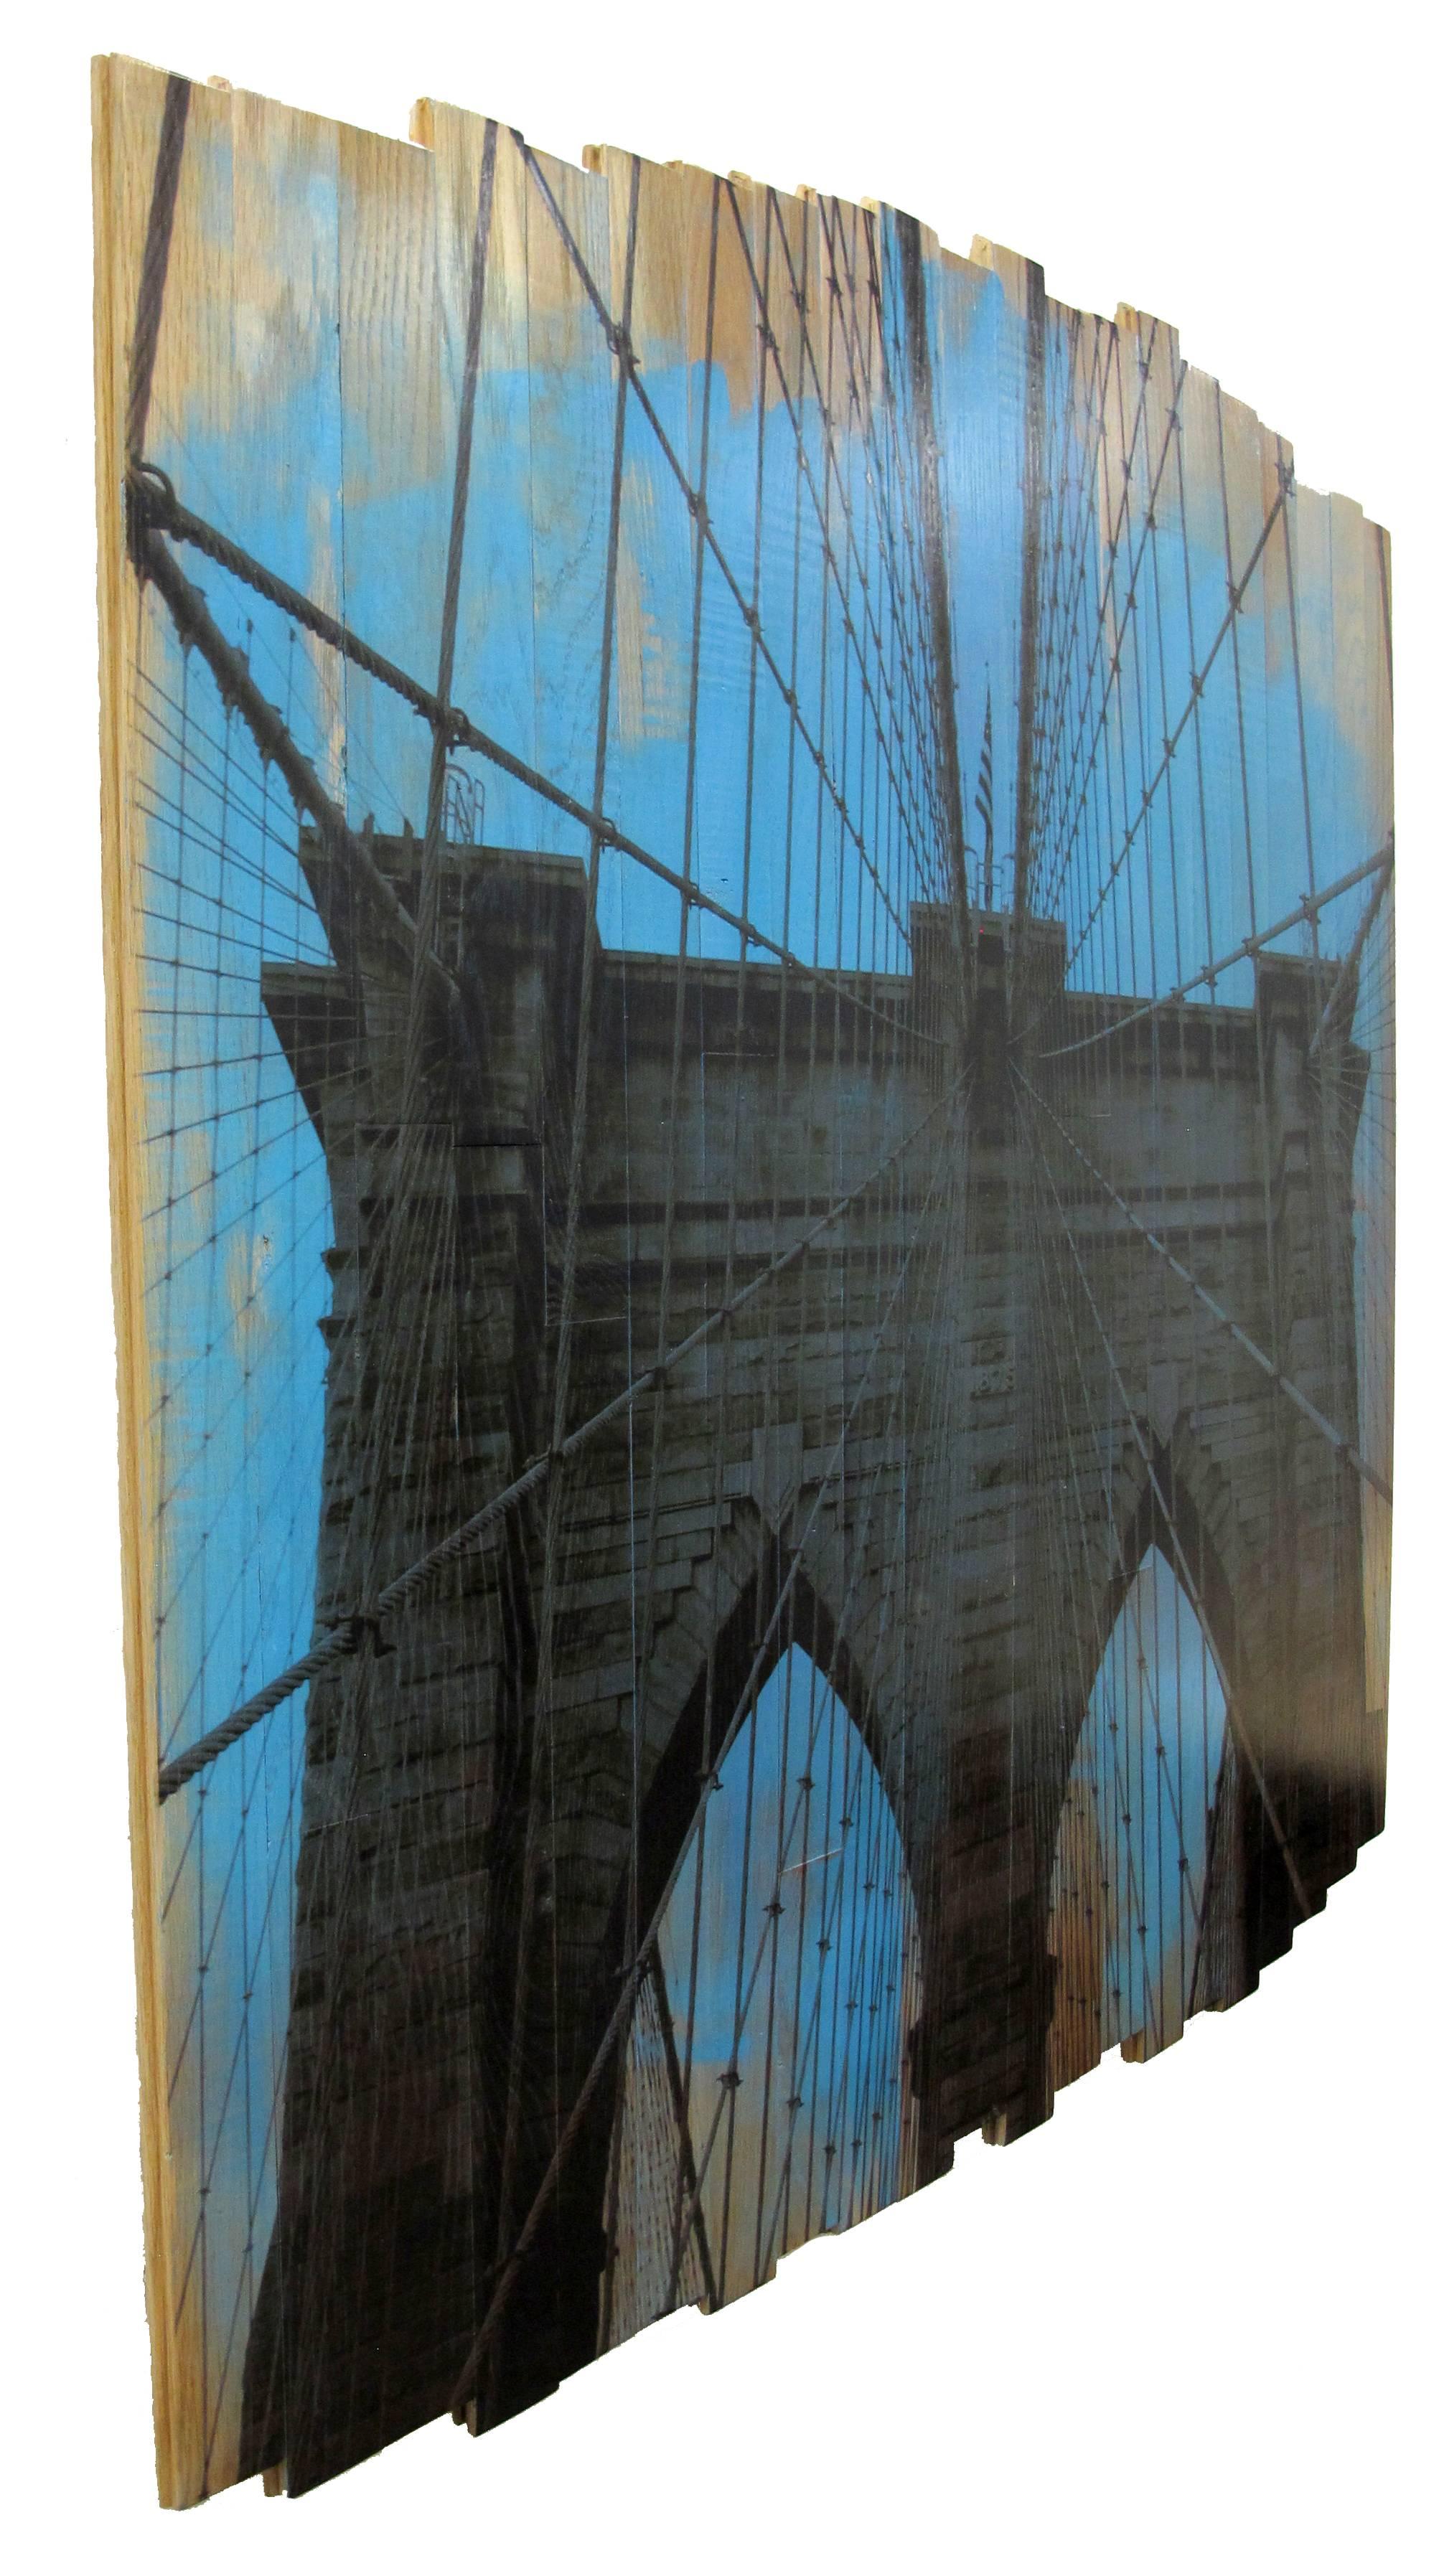 Brooklyn Bridge III, Blue Skies, mixed media photography on wood - Print by Hugo Garcia-Urrutia